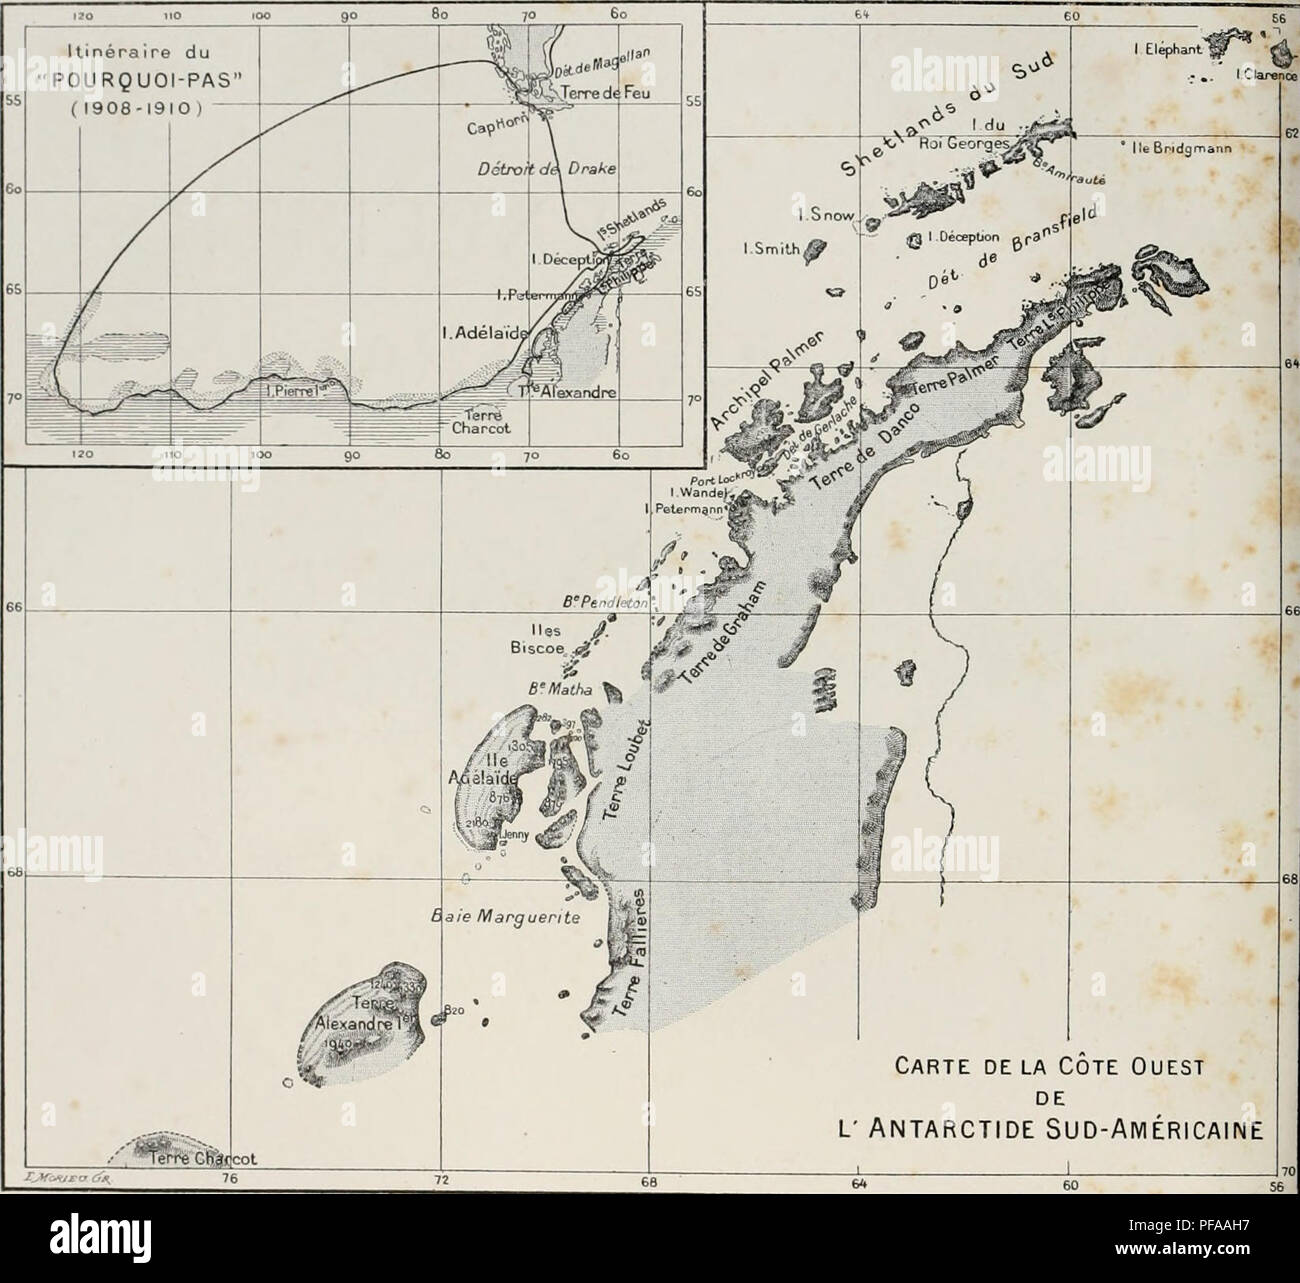 . DeuxiÃ¨me expÃ©dition antarctique francaise (1908-1910). Natural history -- Antarctica; Scientific expeditions -- Antarctica; Antarctica. Carte delÃ Cote Ouest DE L' ANTARCTIDE SUD-AMÃRICAINE CARTE DES RÃGIONS PARCOURUES ET RELEVÃES PAR L'EXPÃDITION MEMBRES DE LETAT MAJOR DU &quot; POURQUOI PAS &quot; J.-B. CHARCOT M. BONGRAIN Hydrographie, Sismographie, Gravitation terrestre, Observations astronomiques. L. CiAIN Zoologie (Spongiaires, Echinodermes. Arthropodes. Oiseaux et teur&amp; parasites) Plankton, Botanique. R.-E. GODFROY MarÃ©es, Tofographie cÃ´tiÃ¨re. Chimie de Tair. E. GOURDON ... . Stock Photo